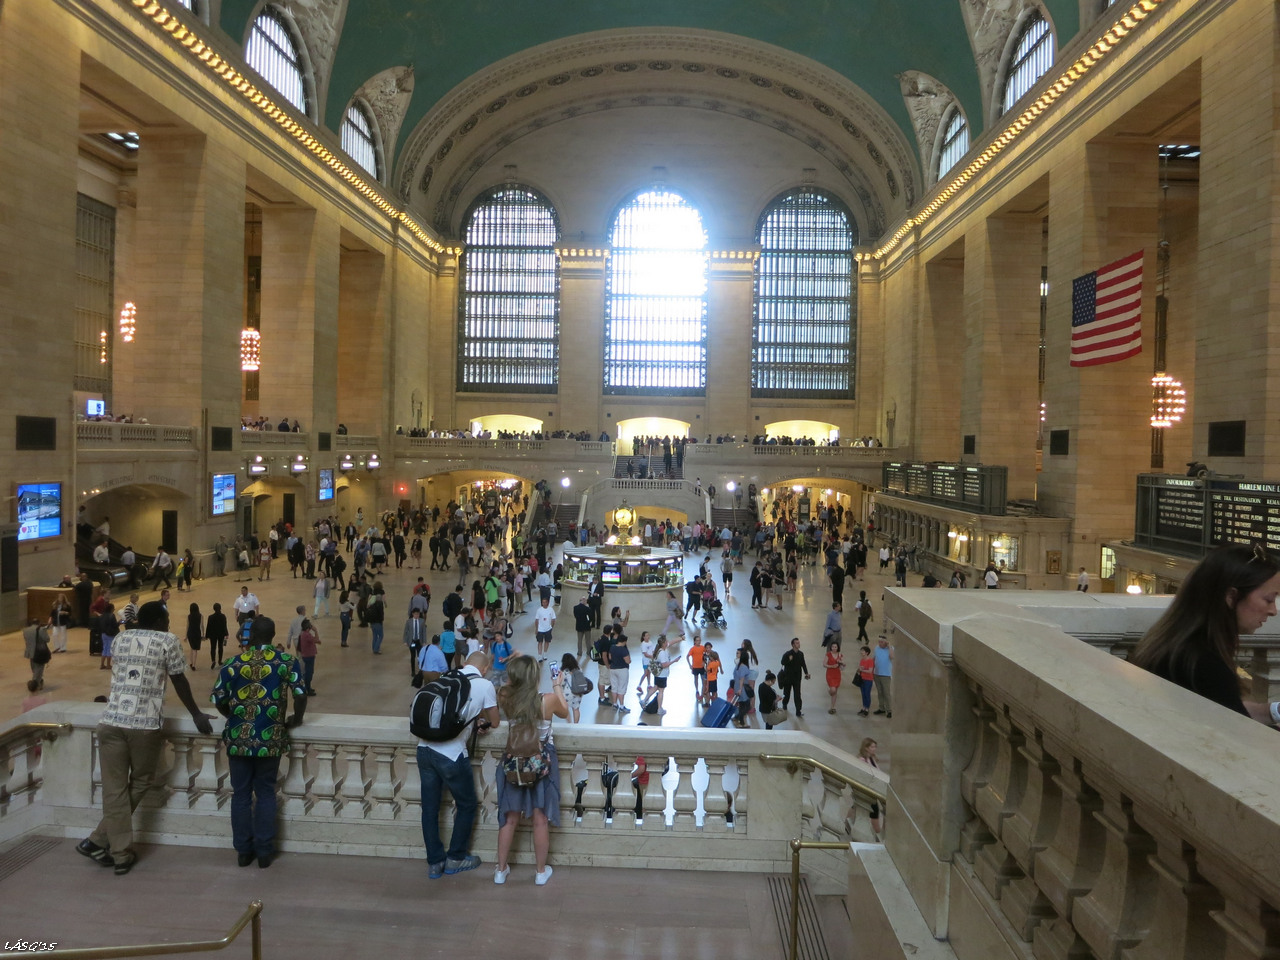 A Grand Central pályaudvar központi csarnoka, sok filmben láttuk. Lenyűgözőek a méretei, és ma is rengeteg vonat indul innen - pedig Kennedy személyesen akadályozta meg a megszűntetését és lebontását anno...